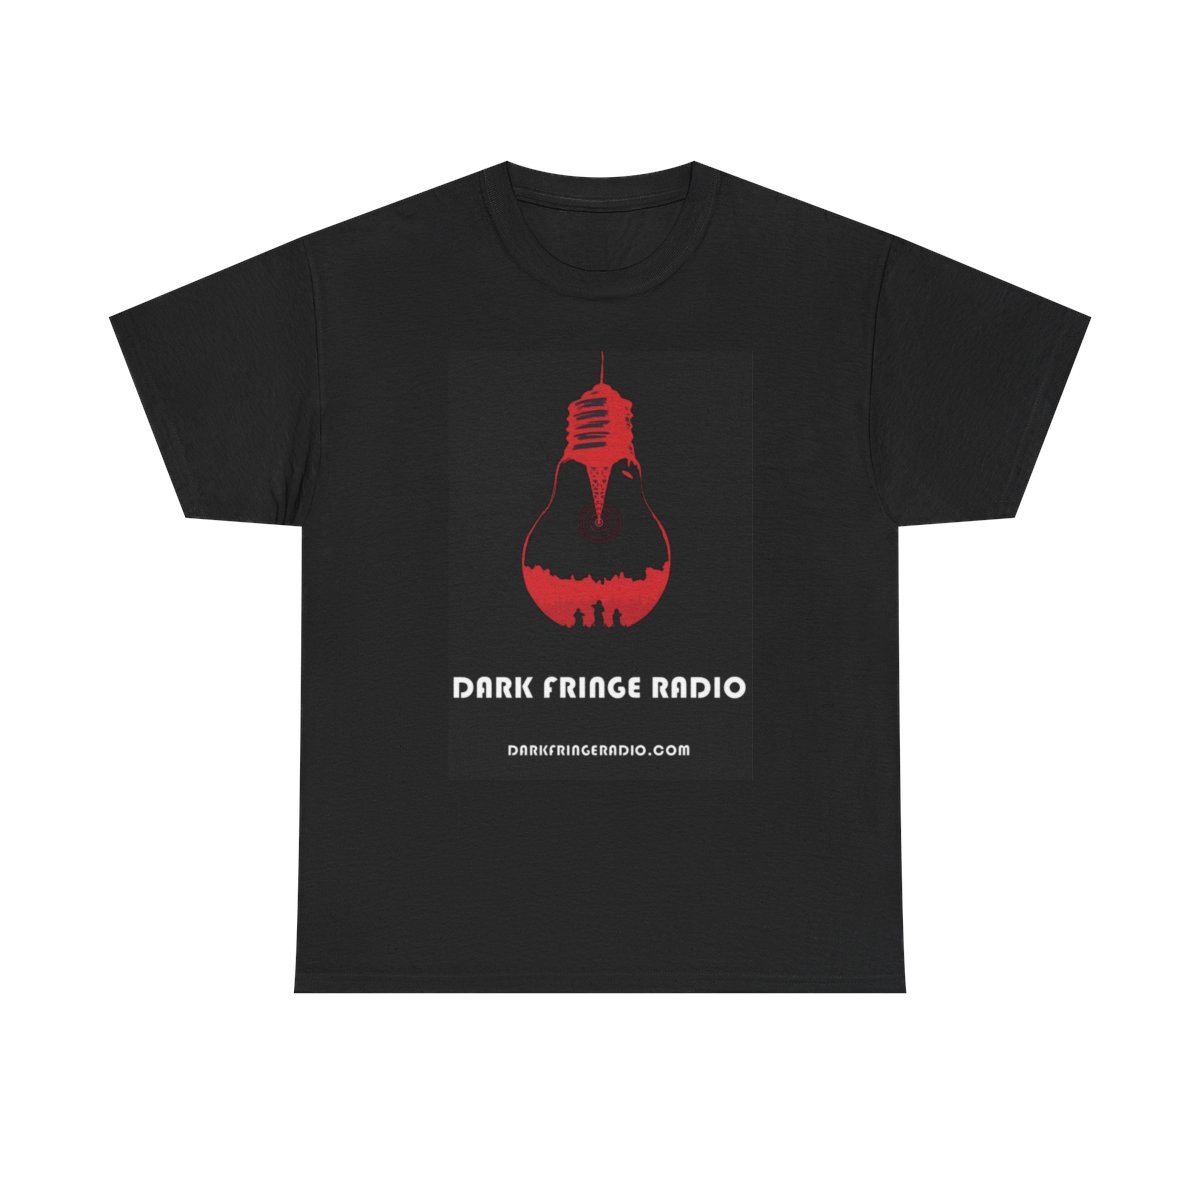 Dark Fringe Radio "The Signal" T-Shirt product main image